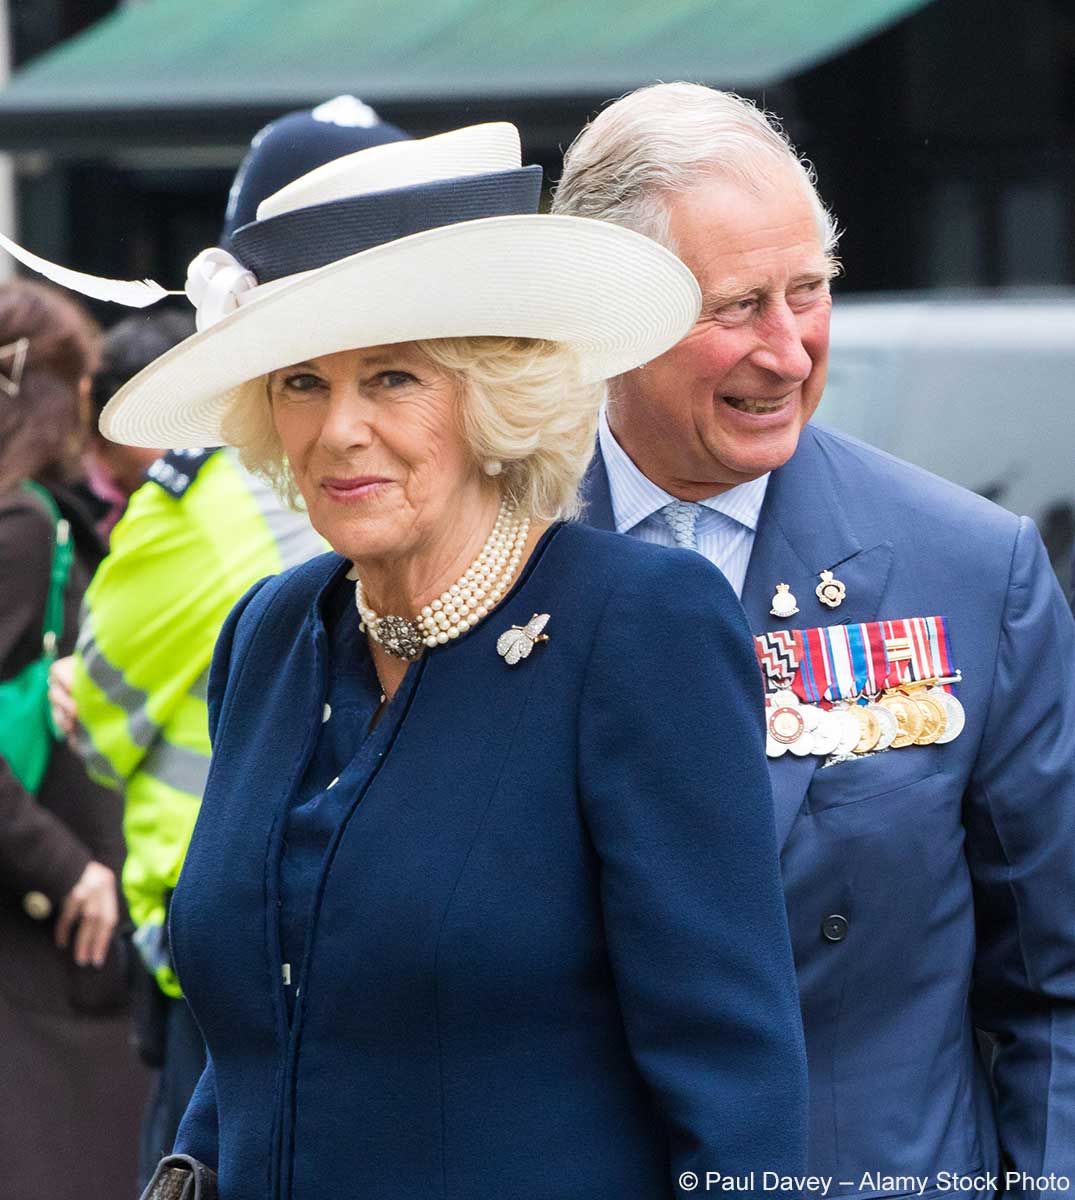 75 ereignisreiche Jahre: Camilla, Herzogin von Cornwall, feiert Geburtstag